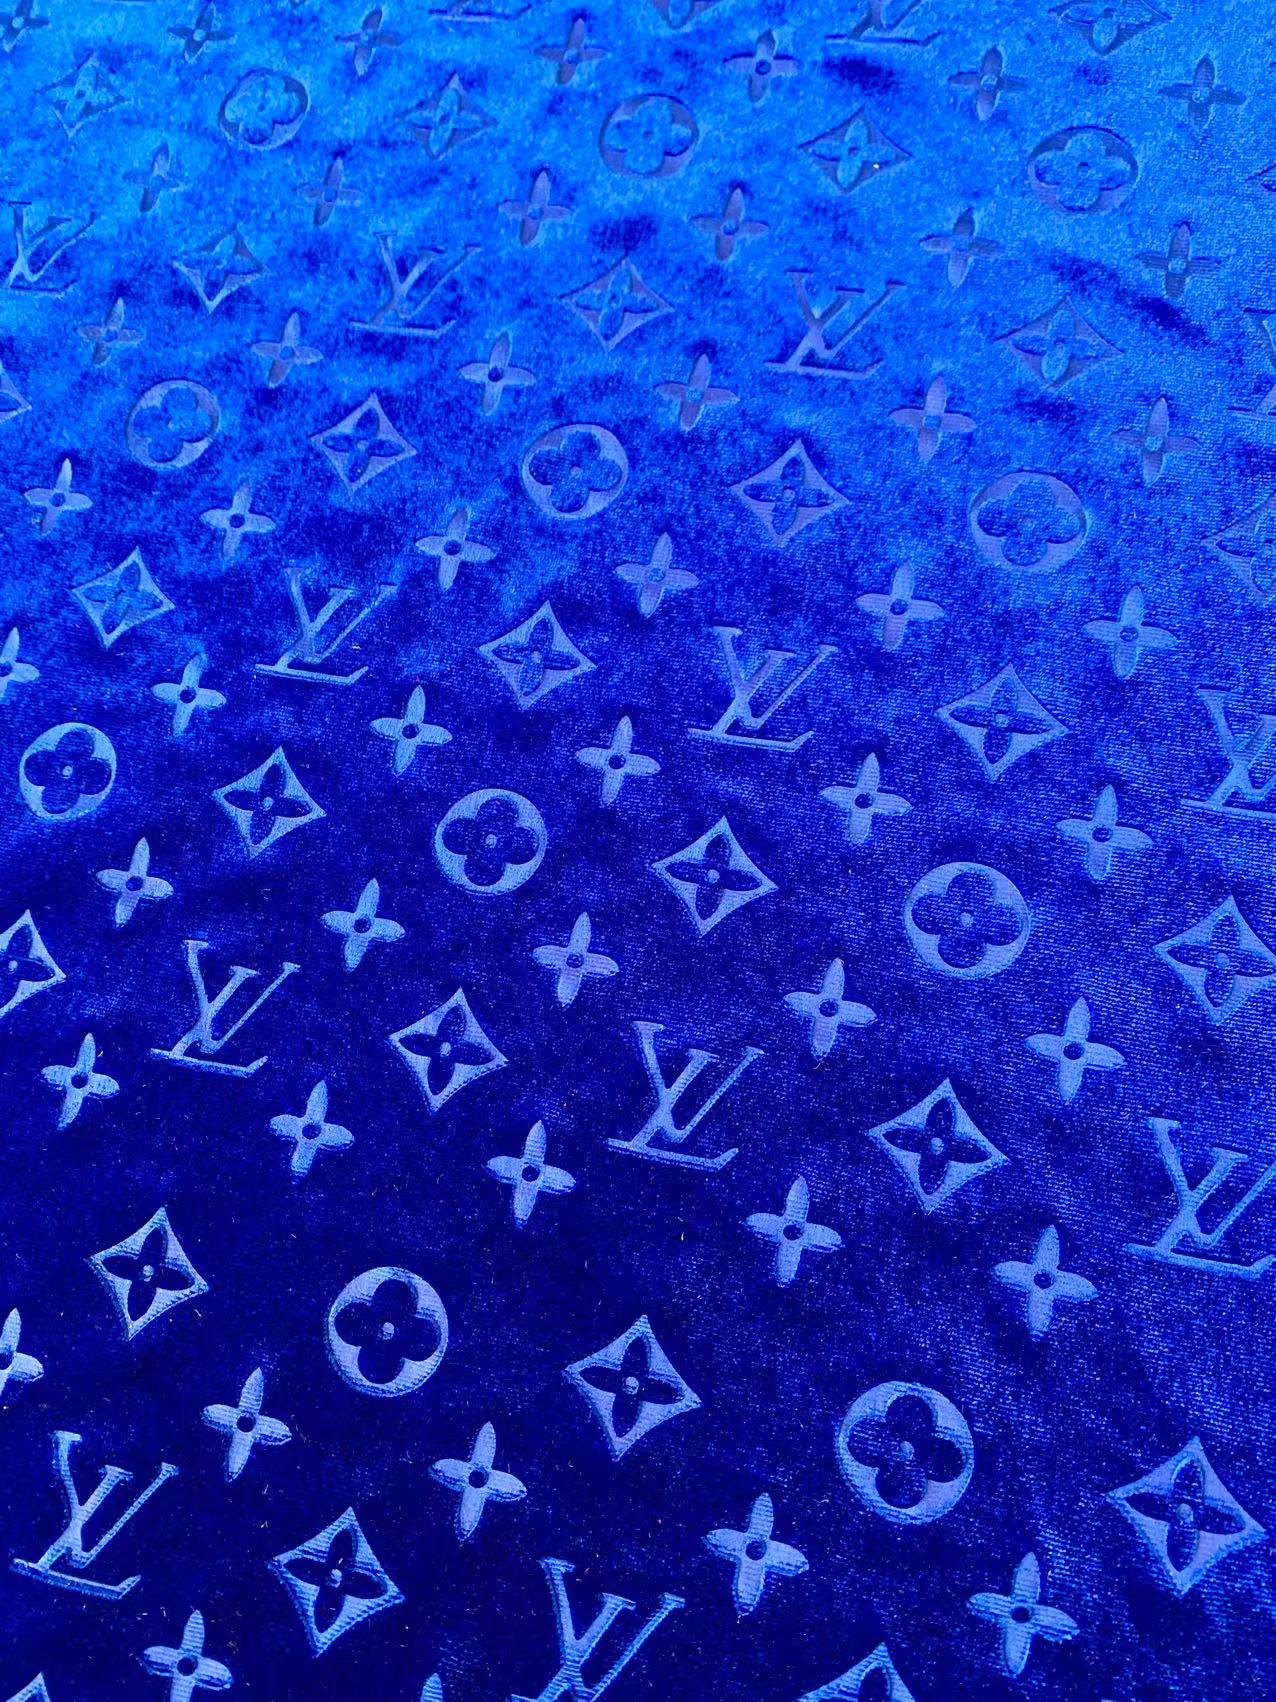 Popular Luxury LV Knitting Velvet Fabric For Handmade Sneaker,Car Upholstery and Apparel By Yard(Navy Blue)